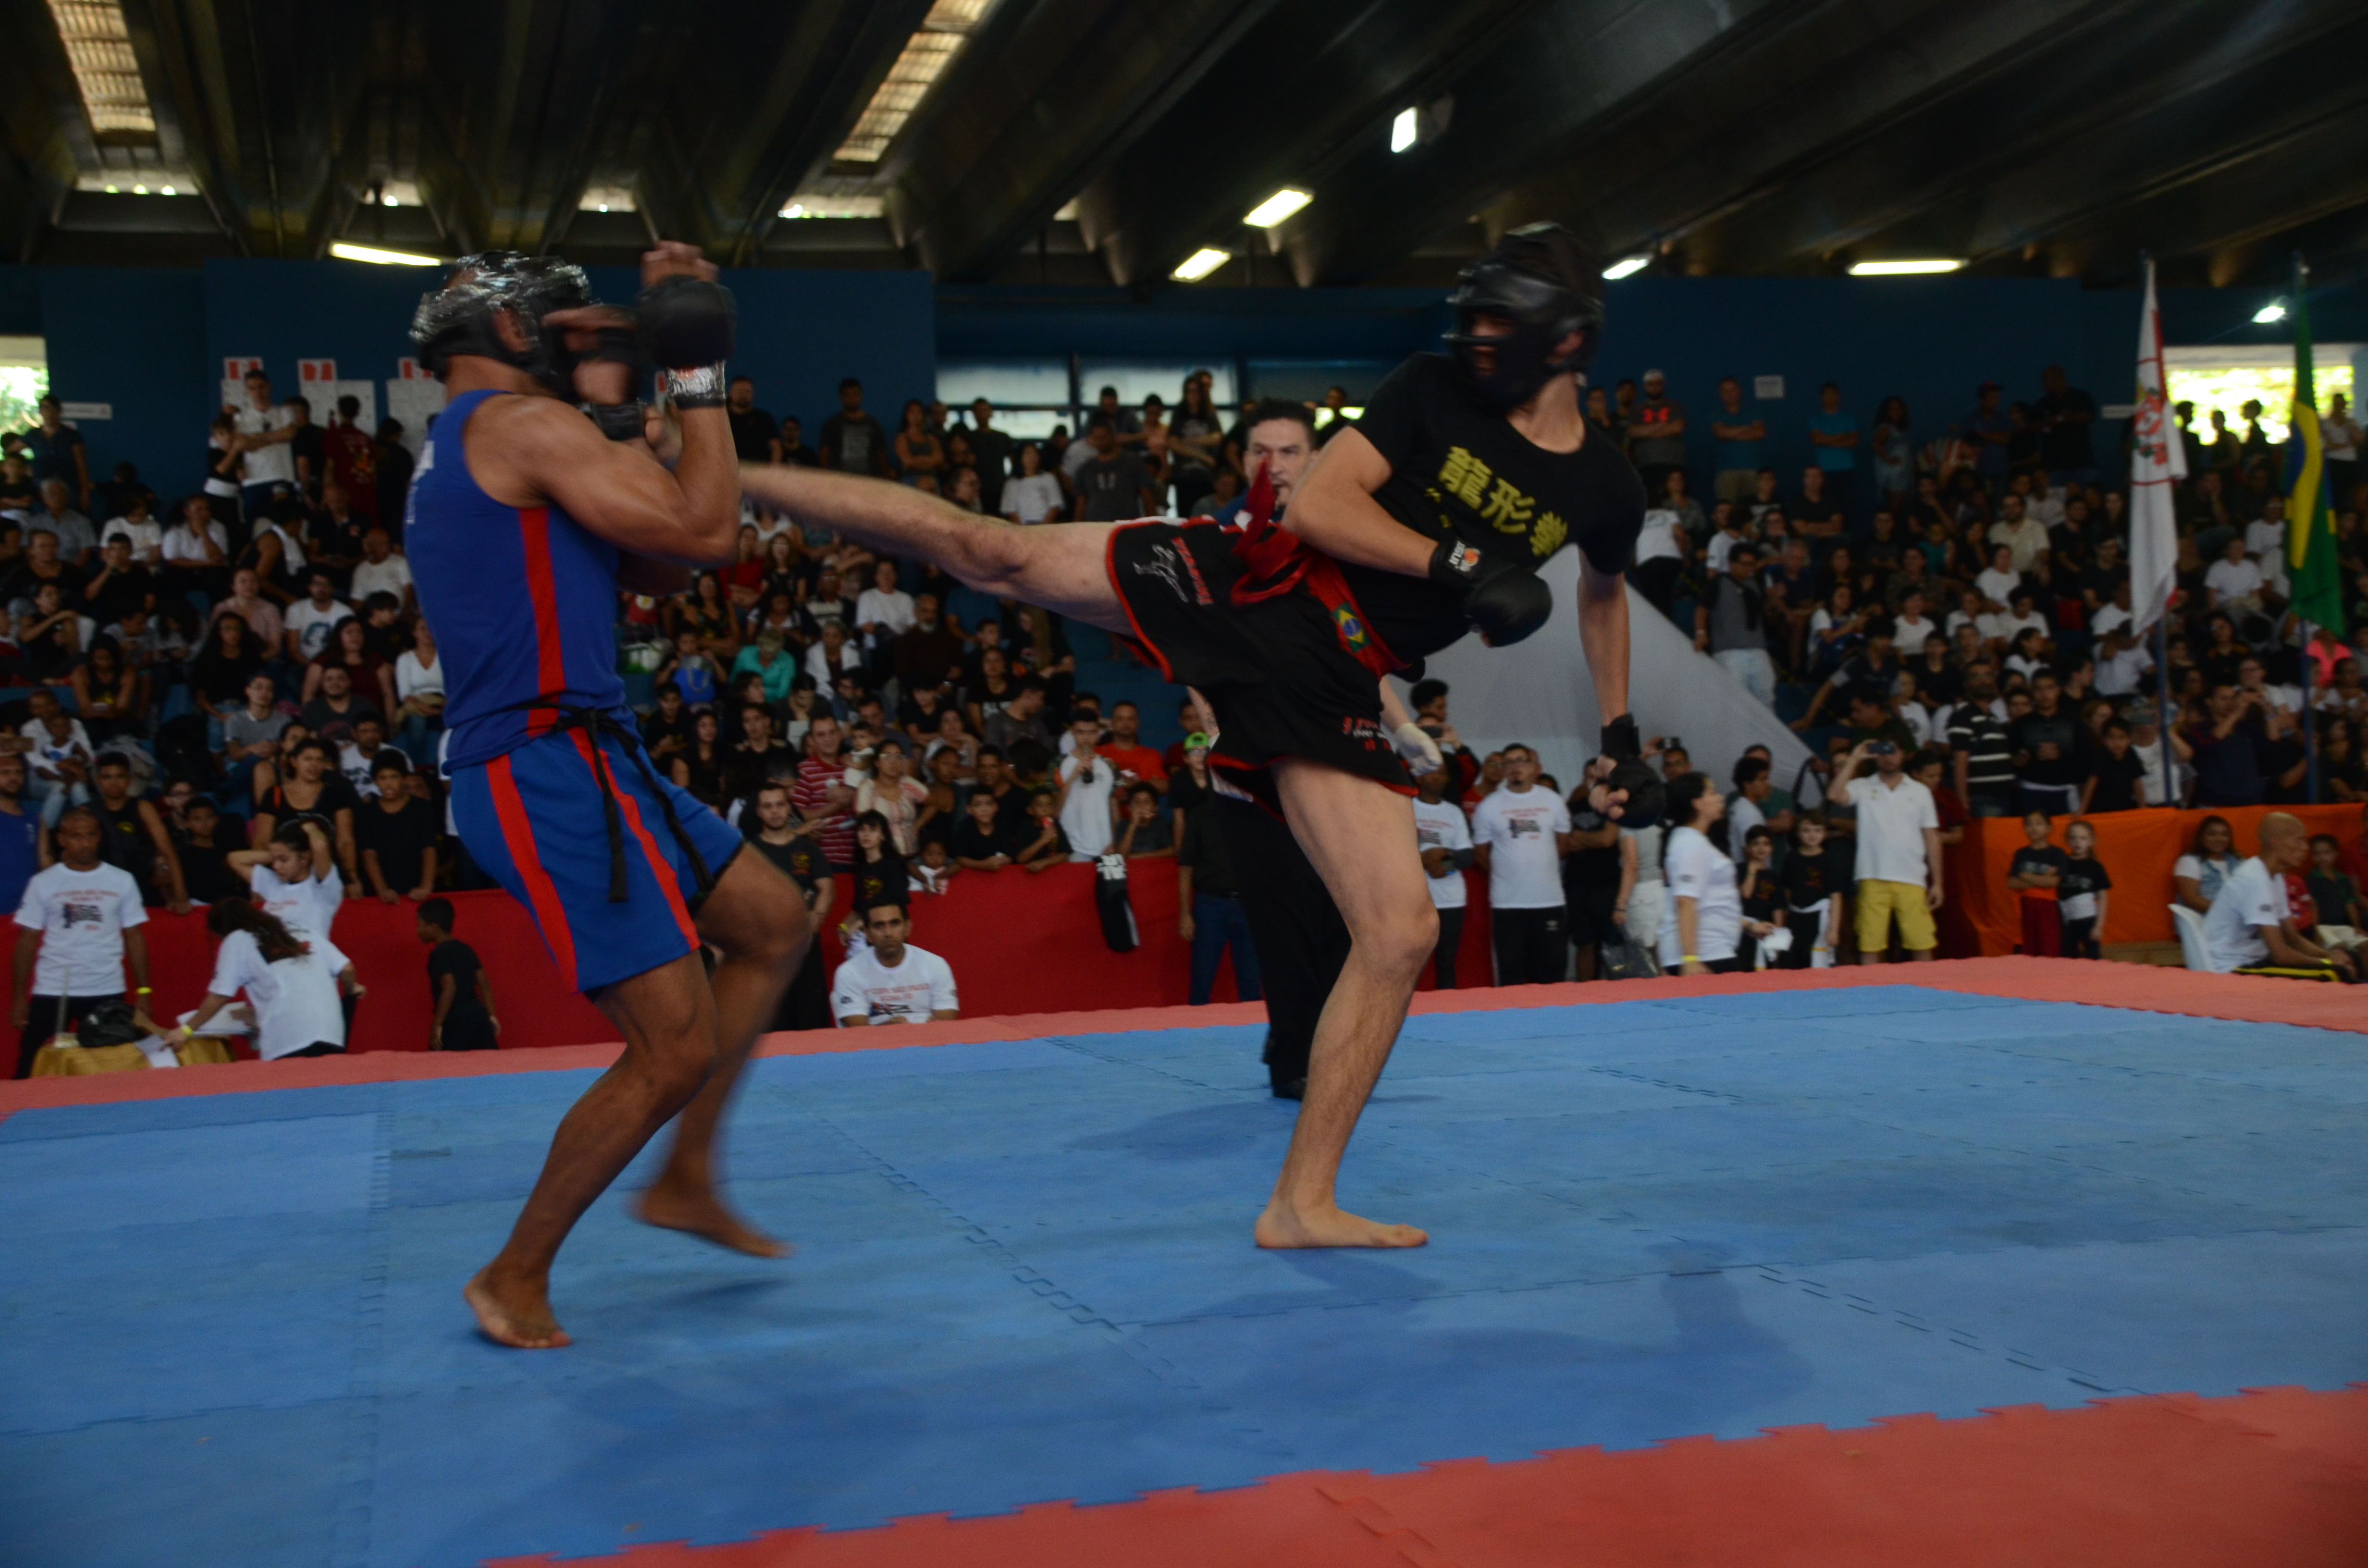 Dois atletas de Kung Fu lutando no CE Mané Garrincha.